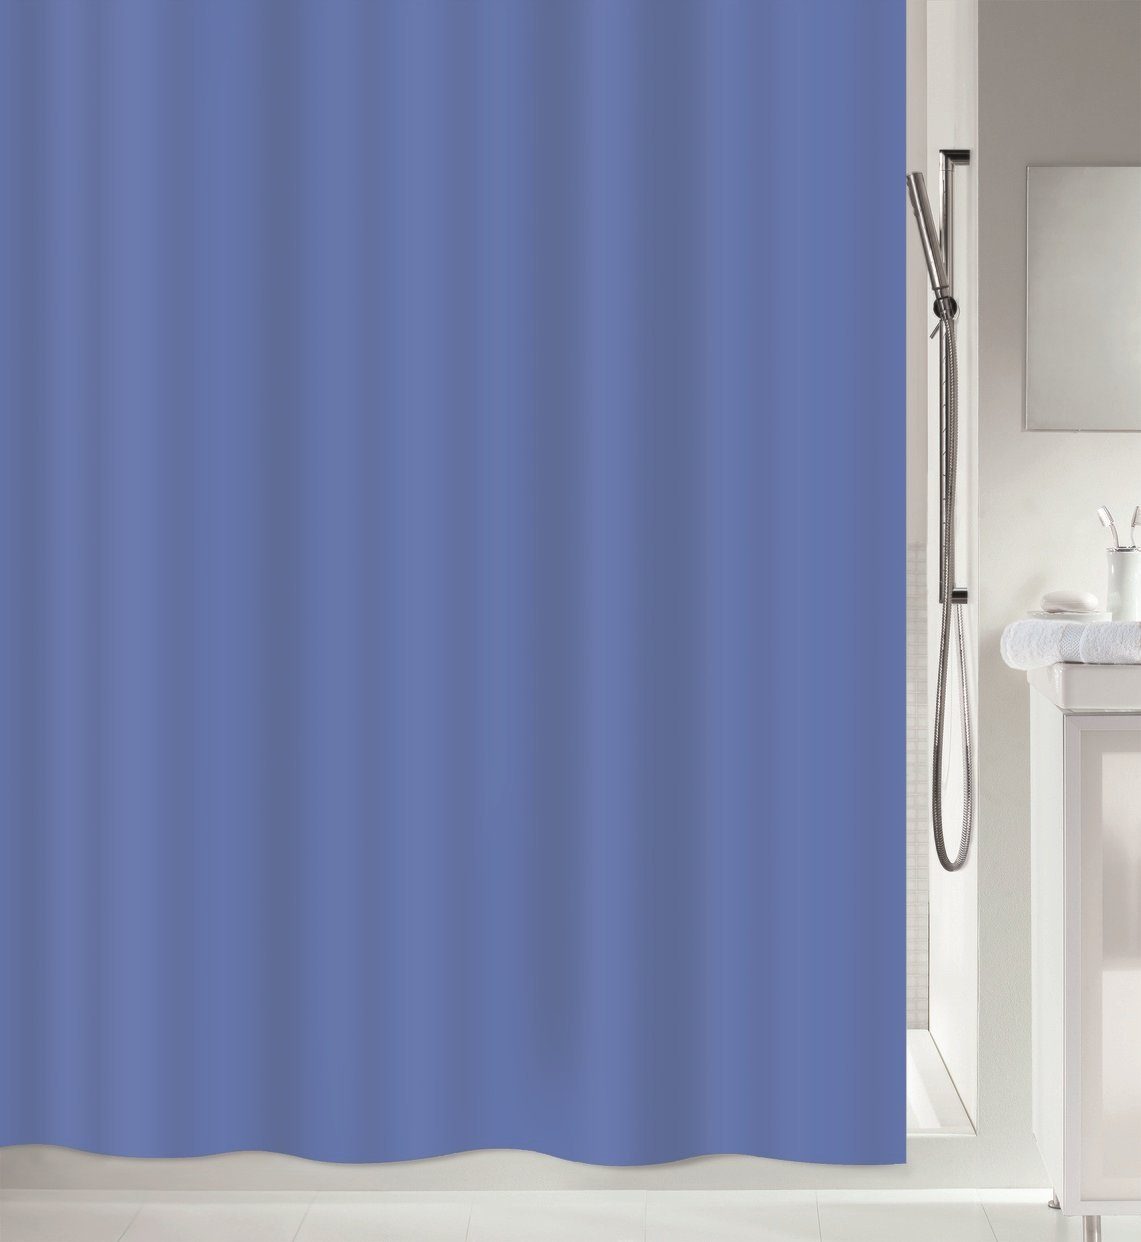 spirella Duschvorhang »ATLAS« Breite 120 cm, Premium Textil-Duschvorhang,  100% Polyester, wasserabweisend, Anti-Schimmel-Effekt, waschbar 40°, uni,  Farbe blau, Größe 120 x 200 cm online kaufen | OTTO